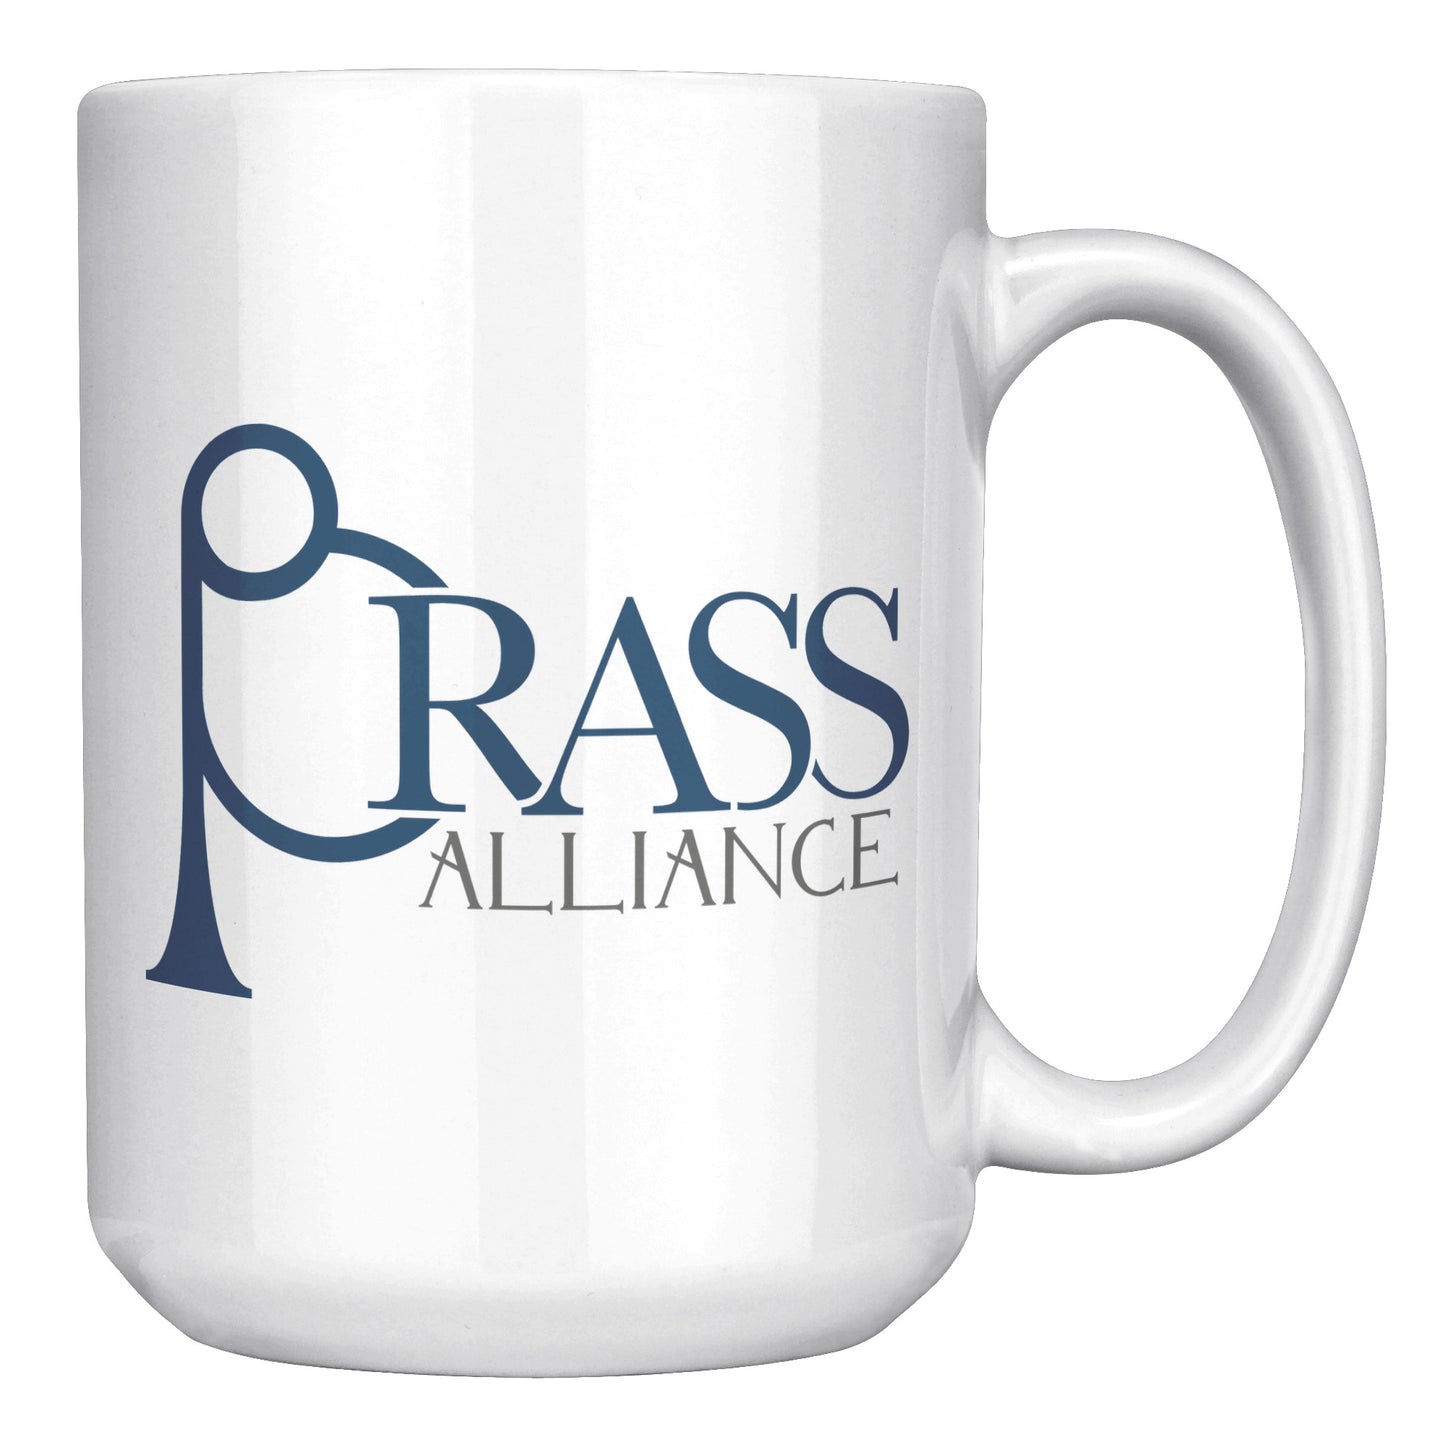 Brass Alliance Mugs